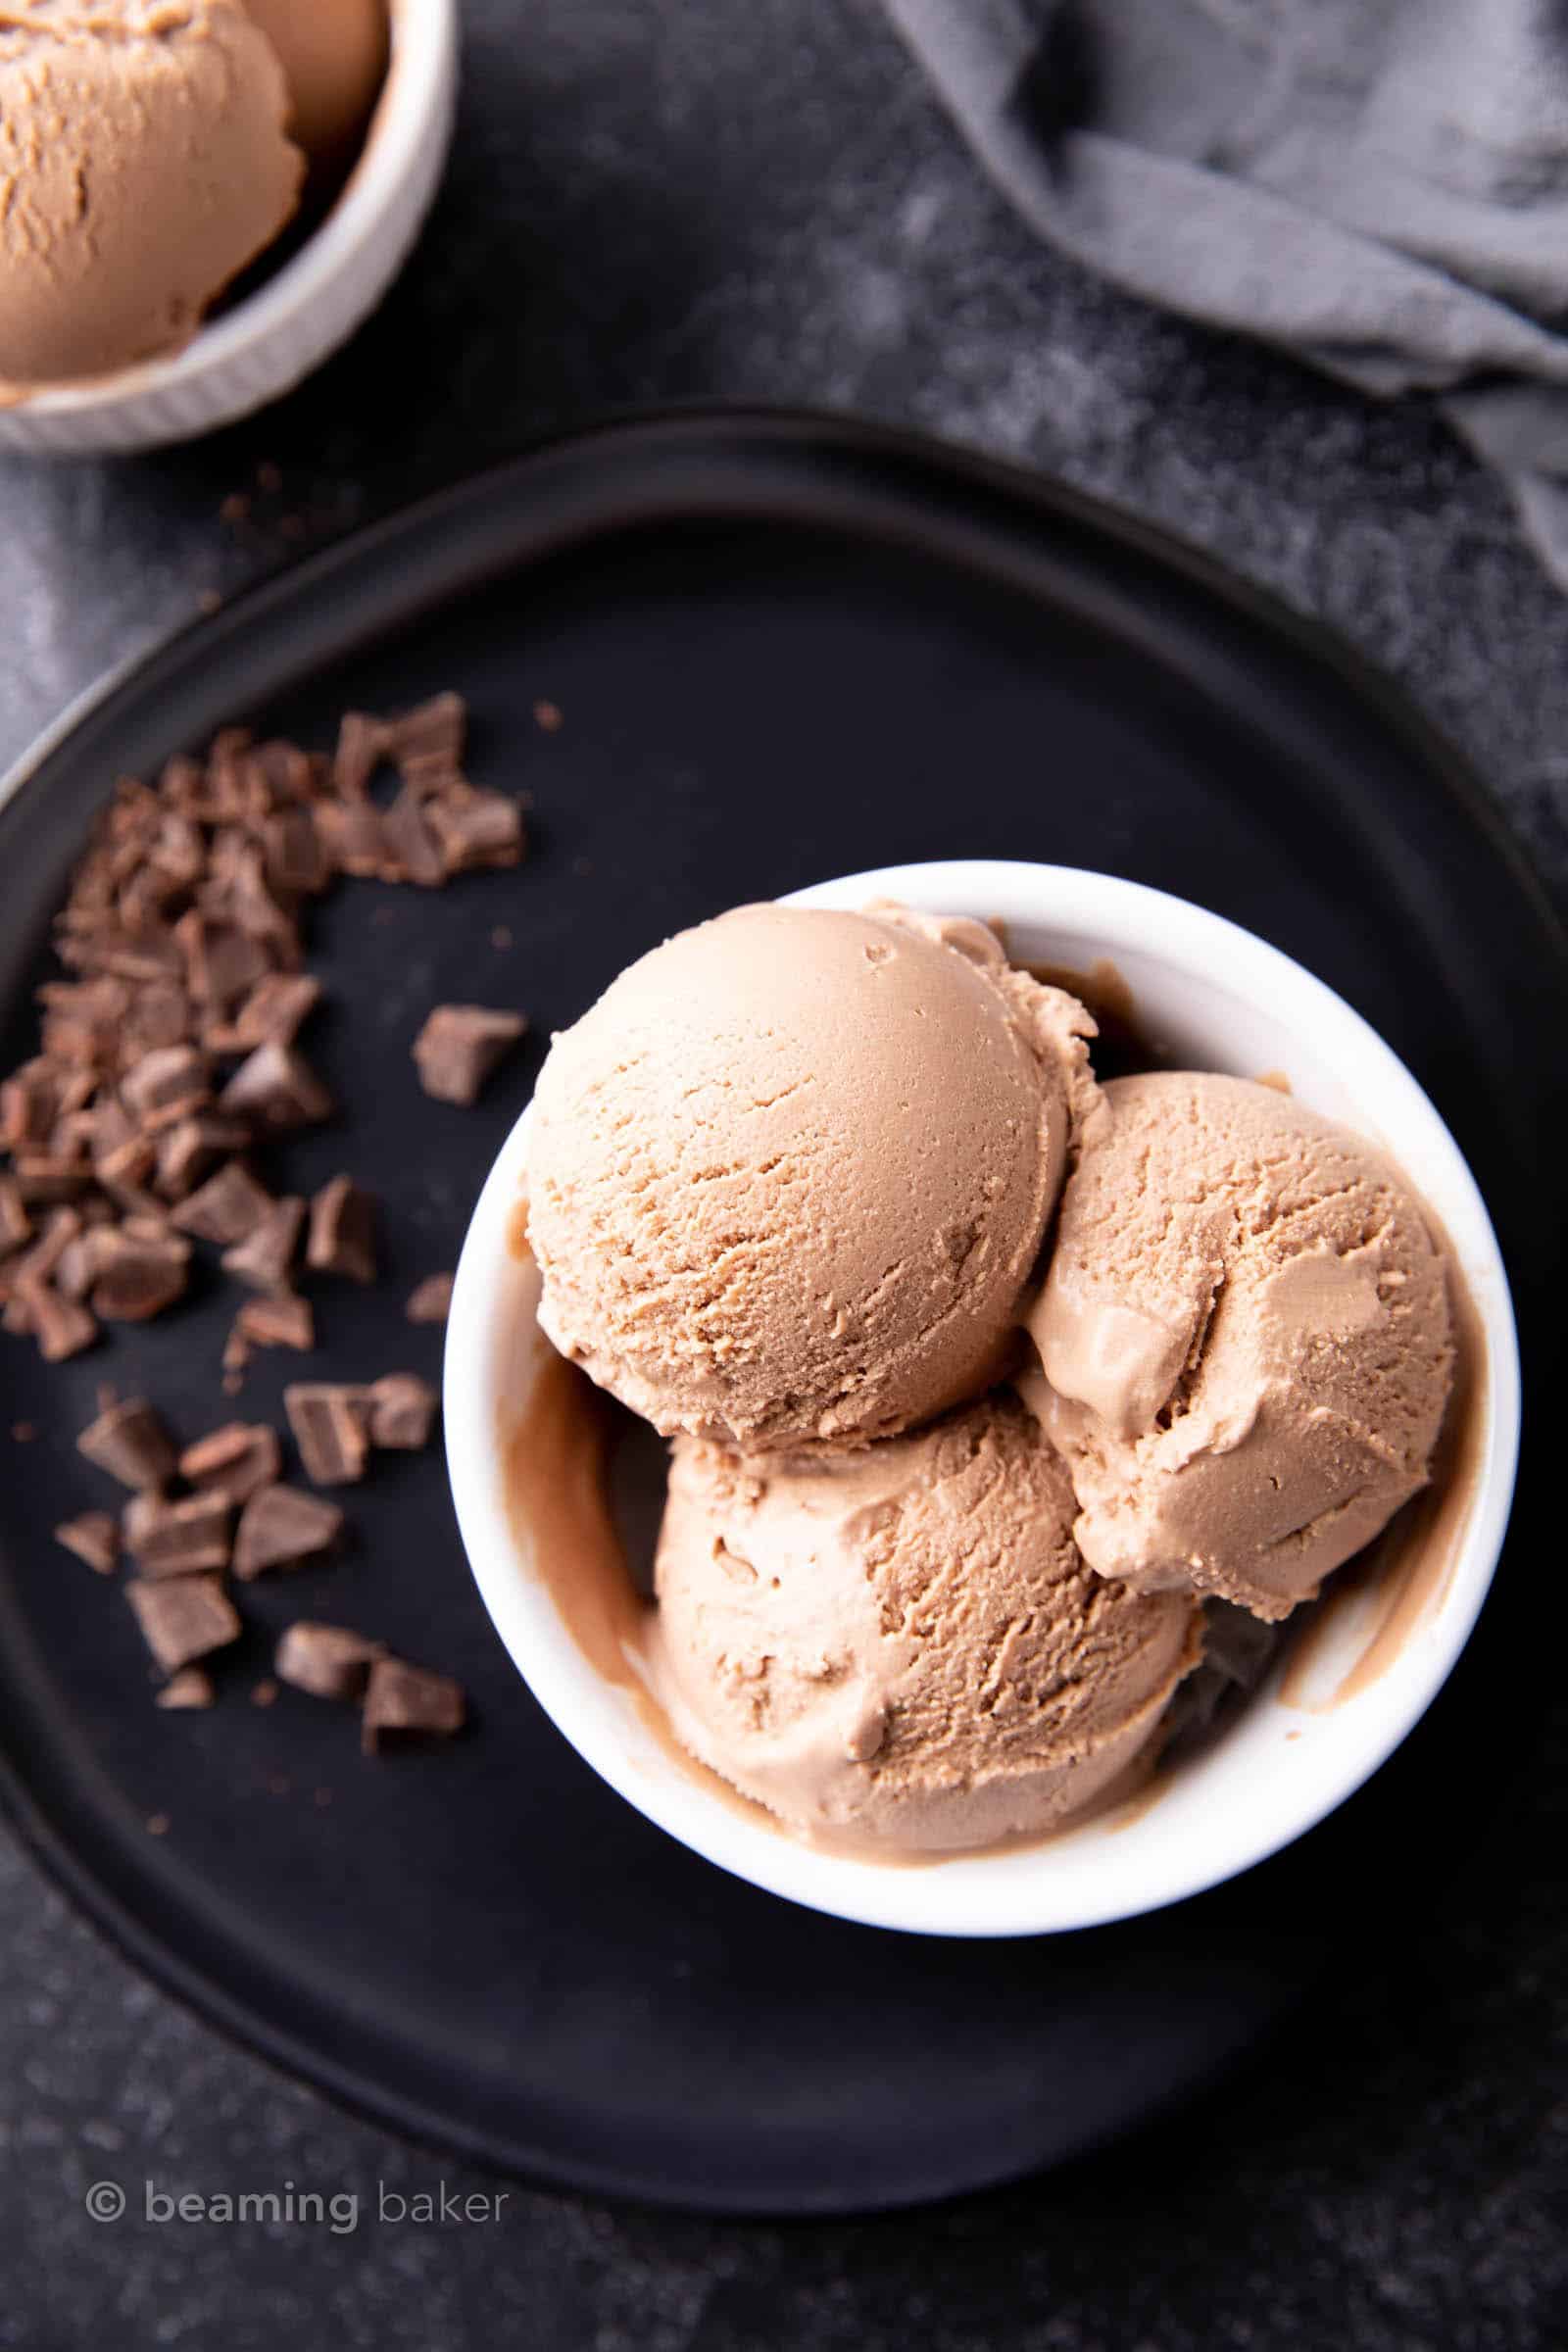 Chocolate Keto Ice Cream Recipe – Homemade! - Beaming Baker